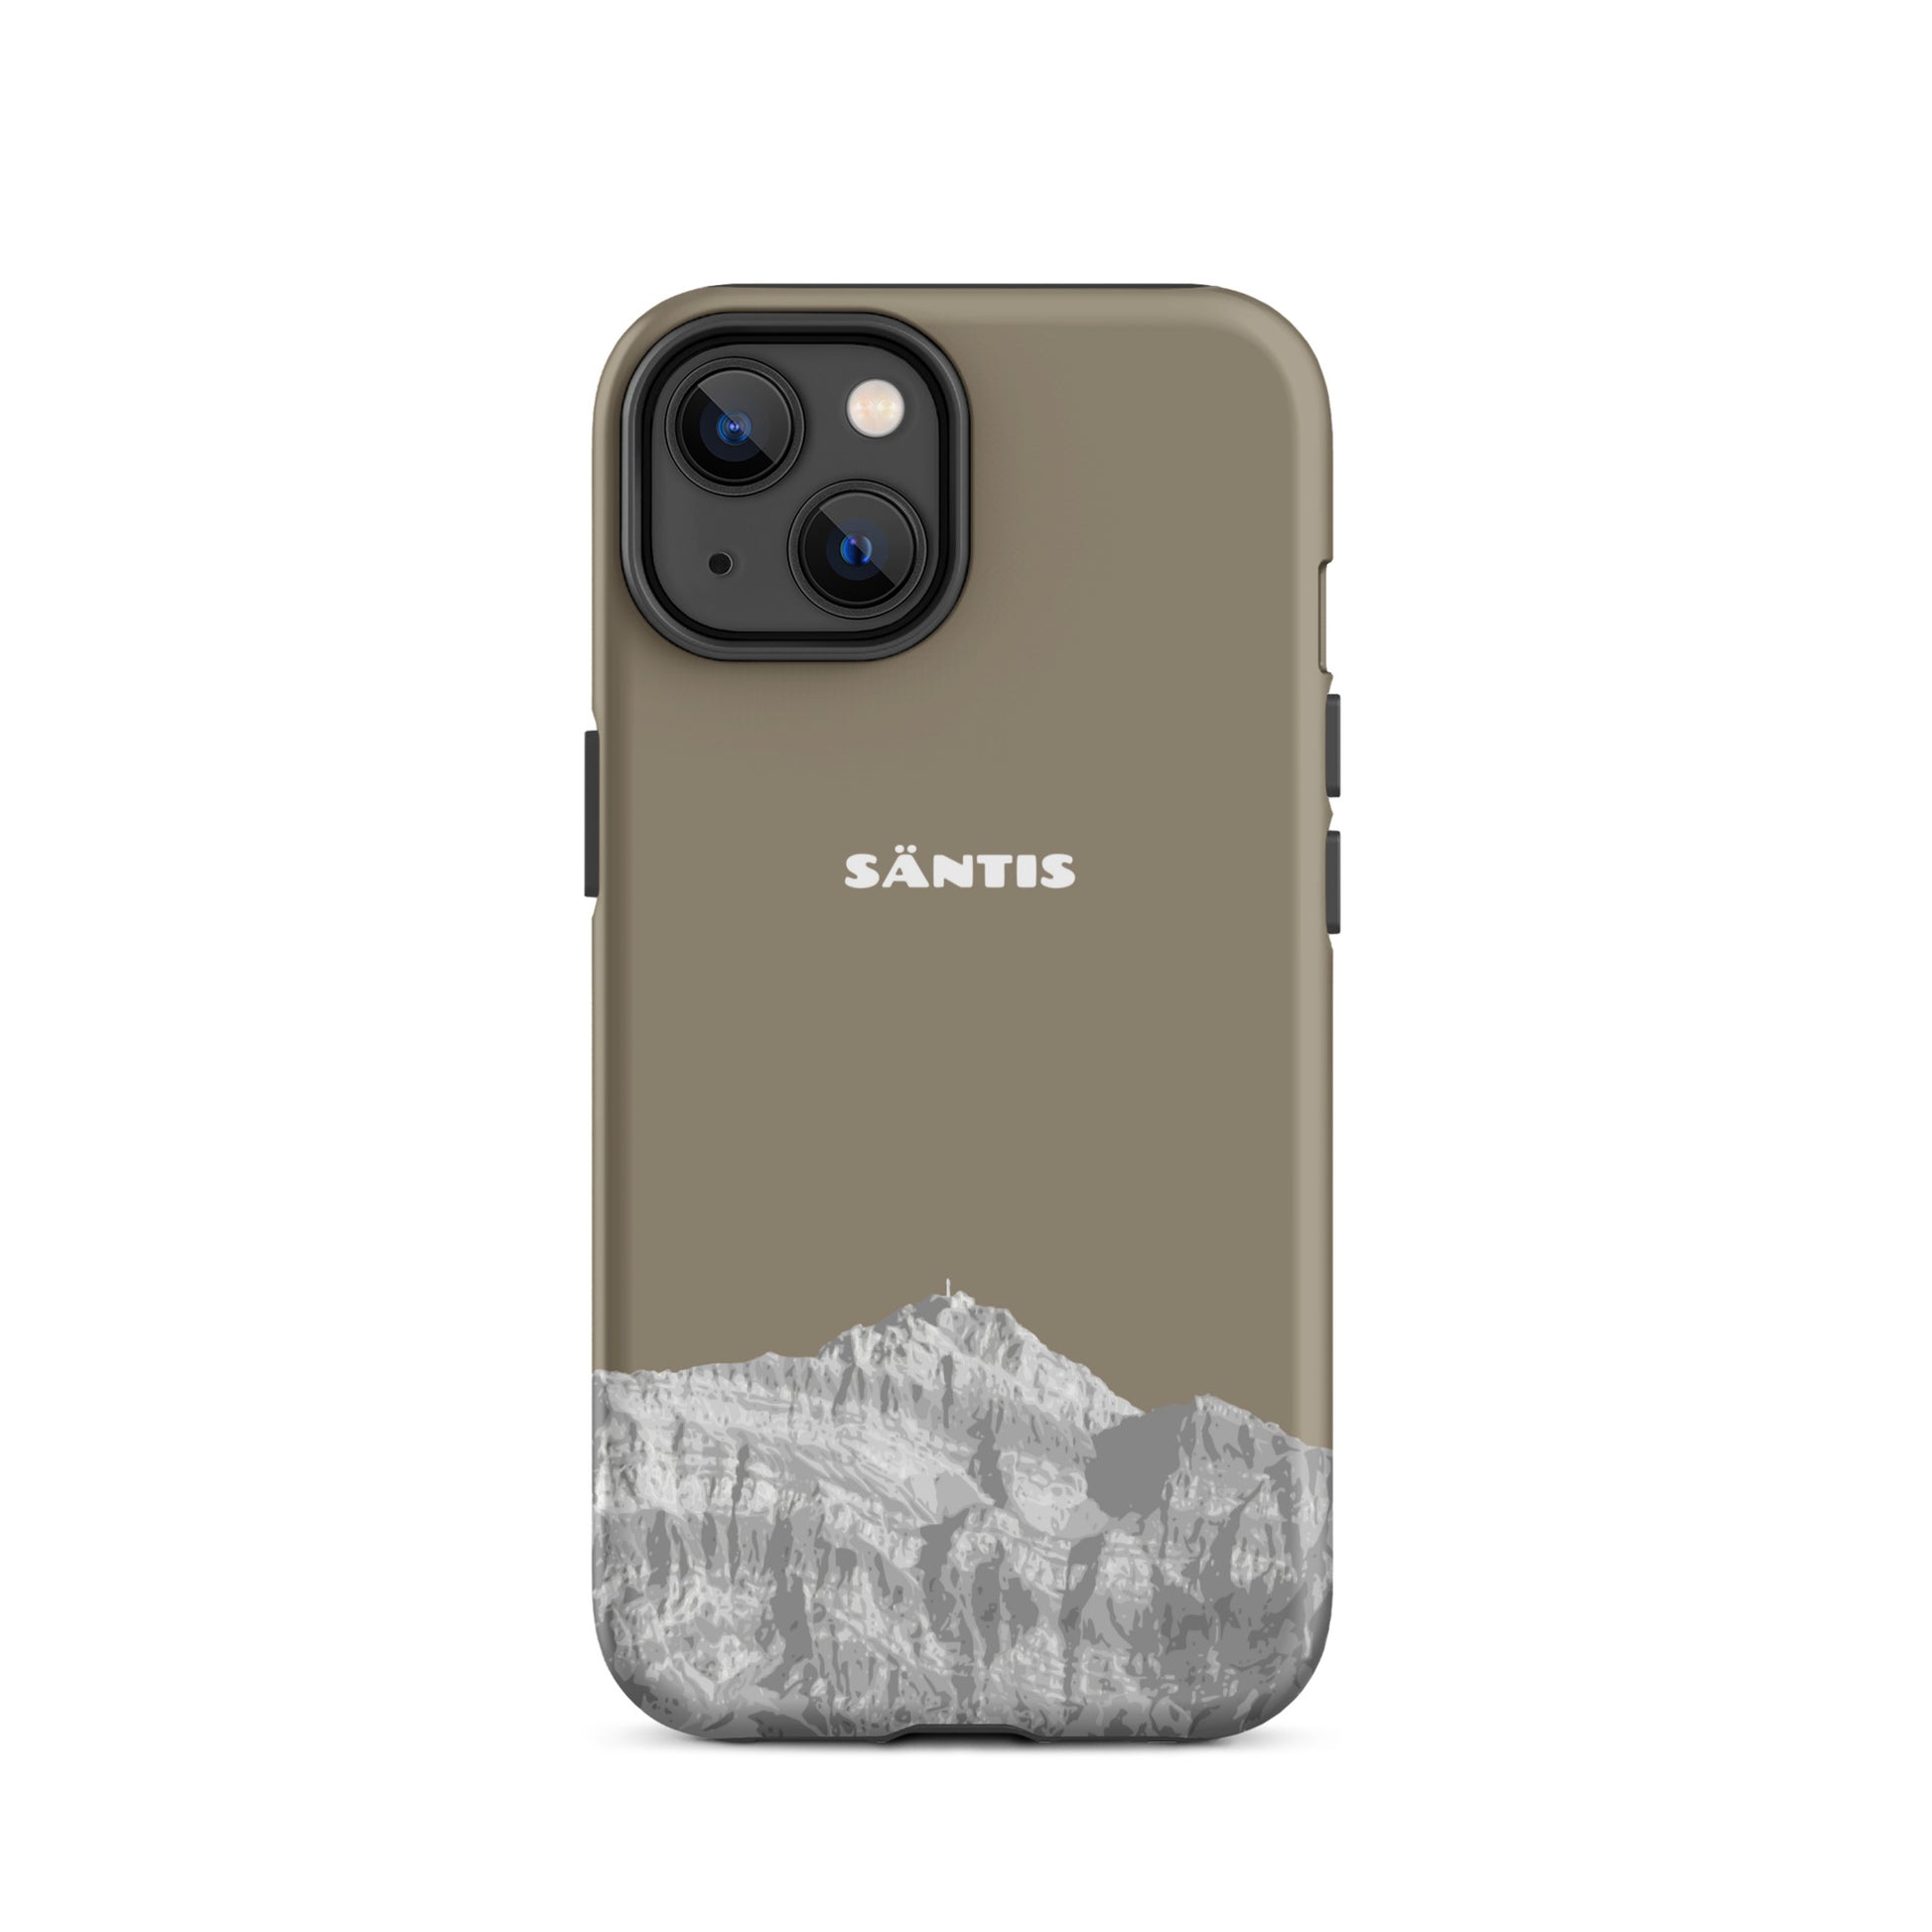 Hülle für das iPhone 14 von Apple in der Farbe Graubraun, dass den Säntis im Alpstein zeigt.